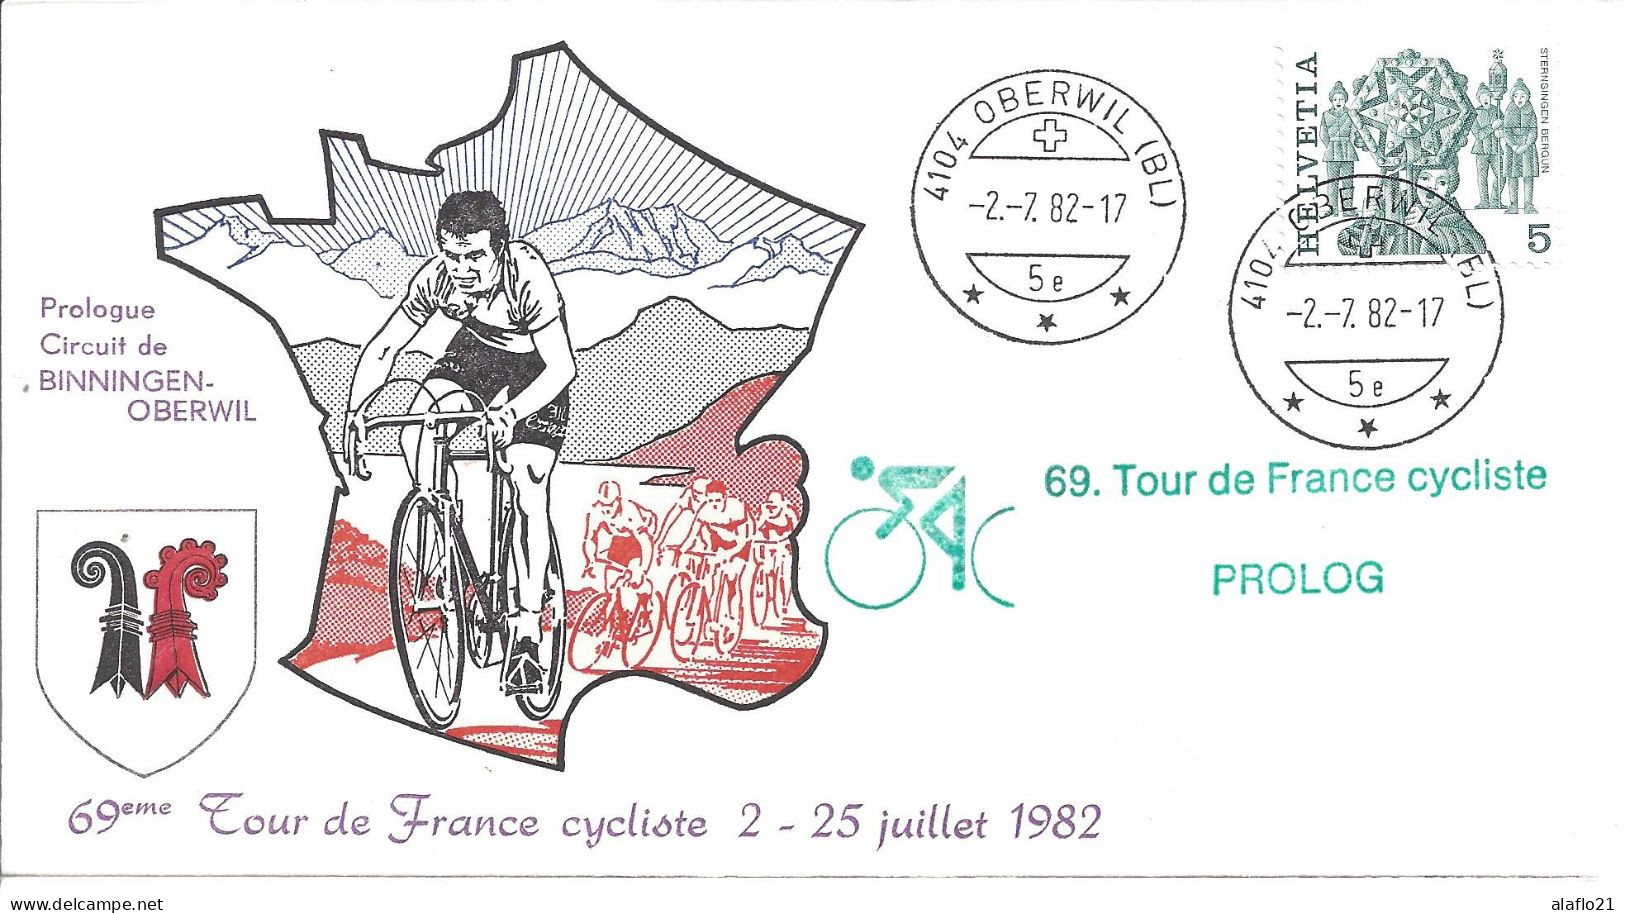 ENVELOPPE OFFICIELLE TOUR De FRANCE CYCLISTE 1982 - PROLOGUE - BINNINGEN-OBERWIL - Bolli Commemorativi